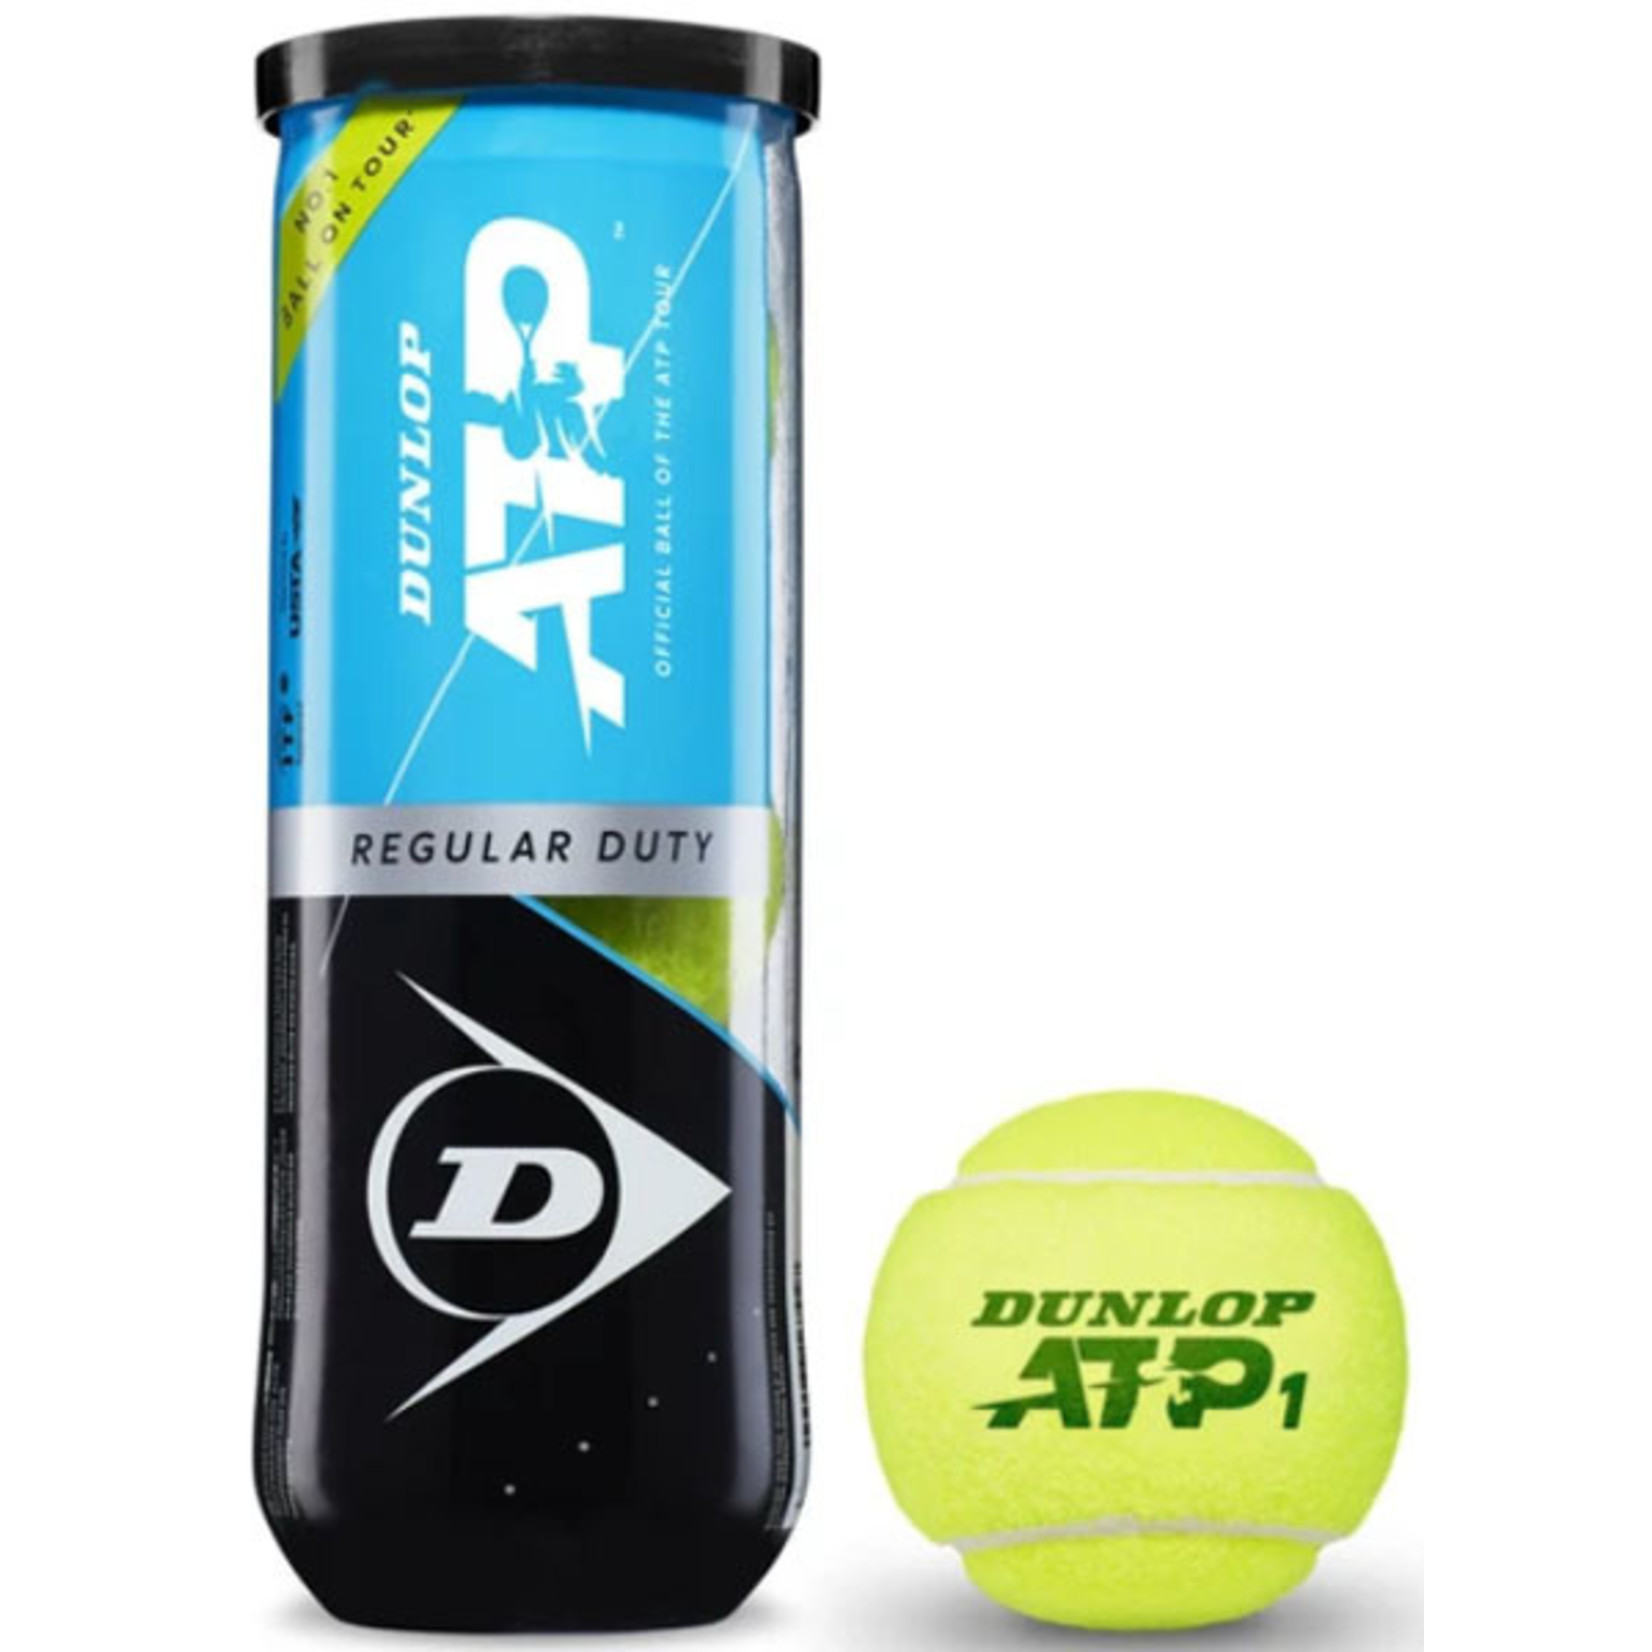 Dunlop Dunlop ATP Regular Duty Tennis Balls - Case of 24 Tubes